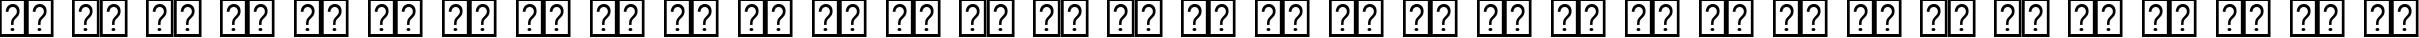 Пример написания русского алфавита шрифтом Nyala